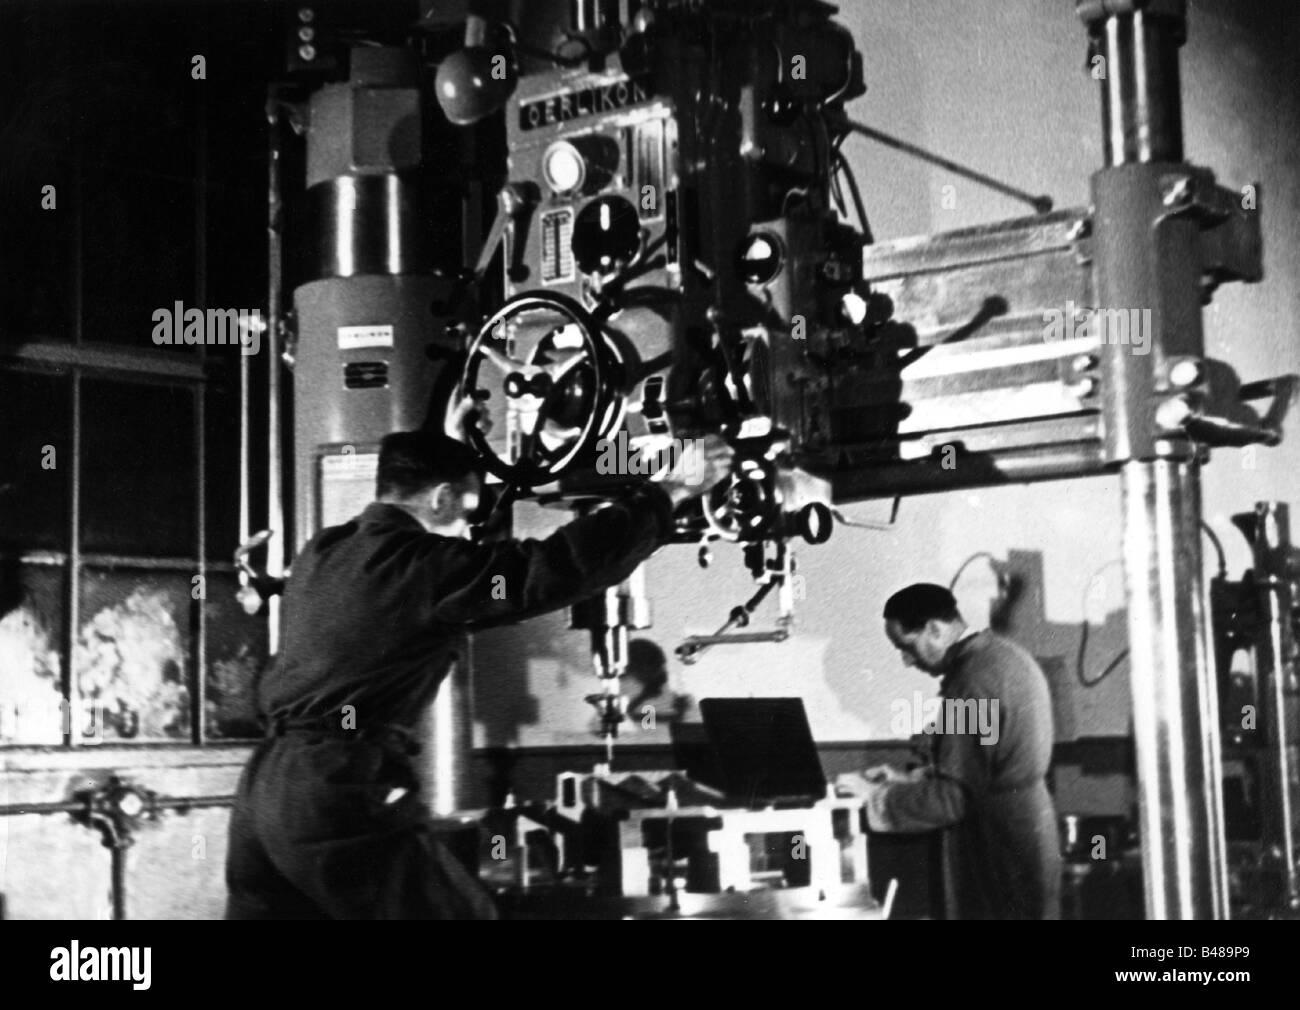 Événements, deuxième Guerre mondiale / seconde Guerre mondiale, Allemagne, industrie de l'armement, machine Oerlikon pour le travail du métal, vers 1940, Banque D'Images